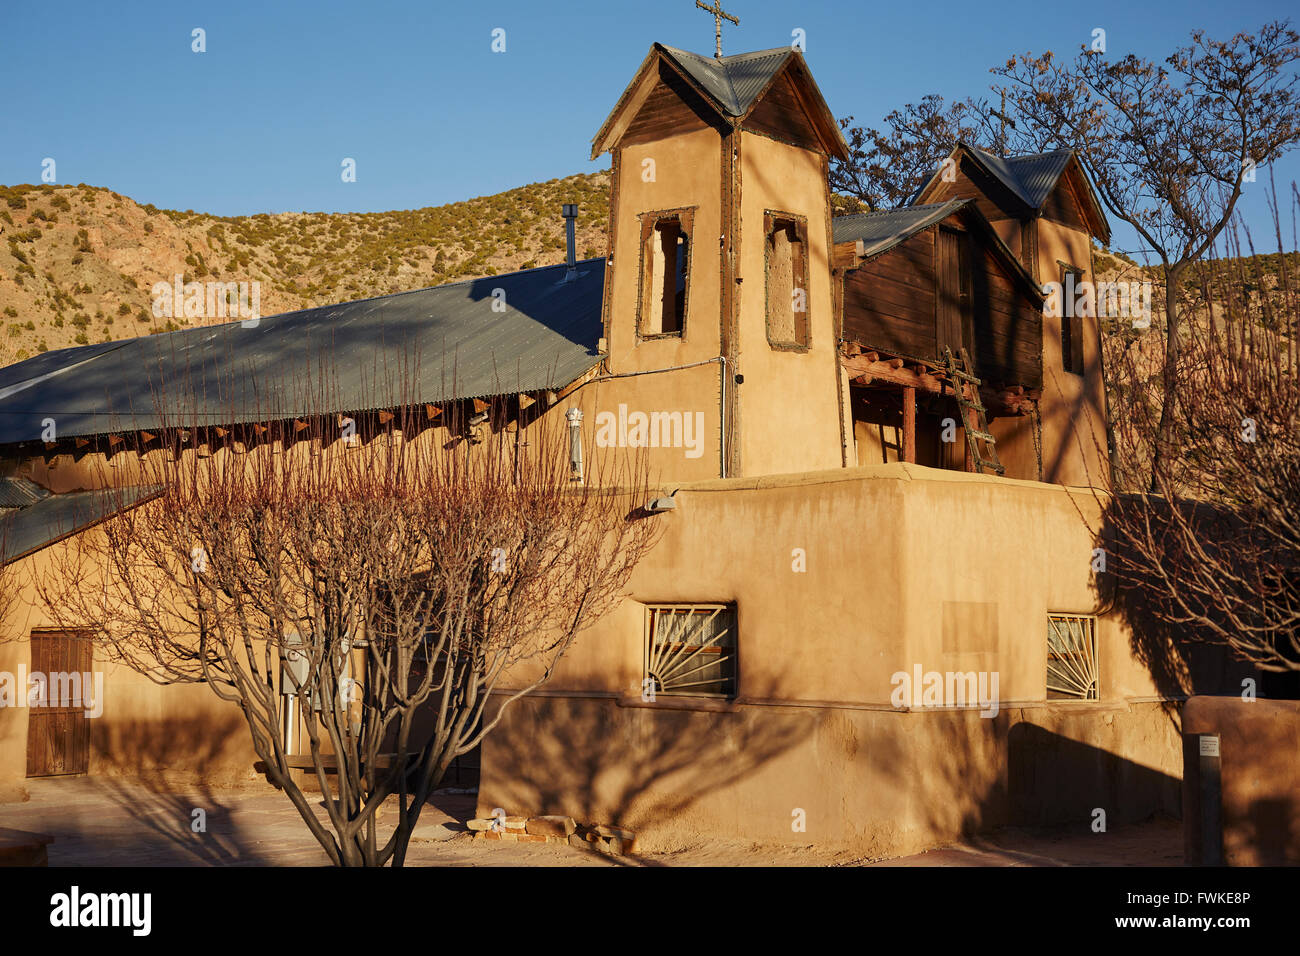 El Santuario de Chimayó, Chimayo, New Mexico, USA Stockfoto